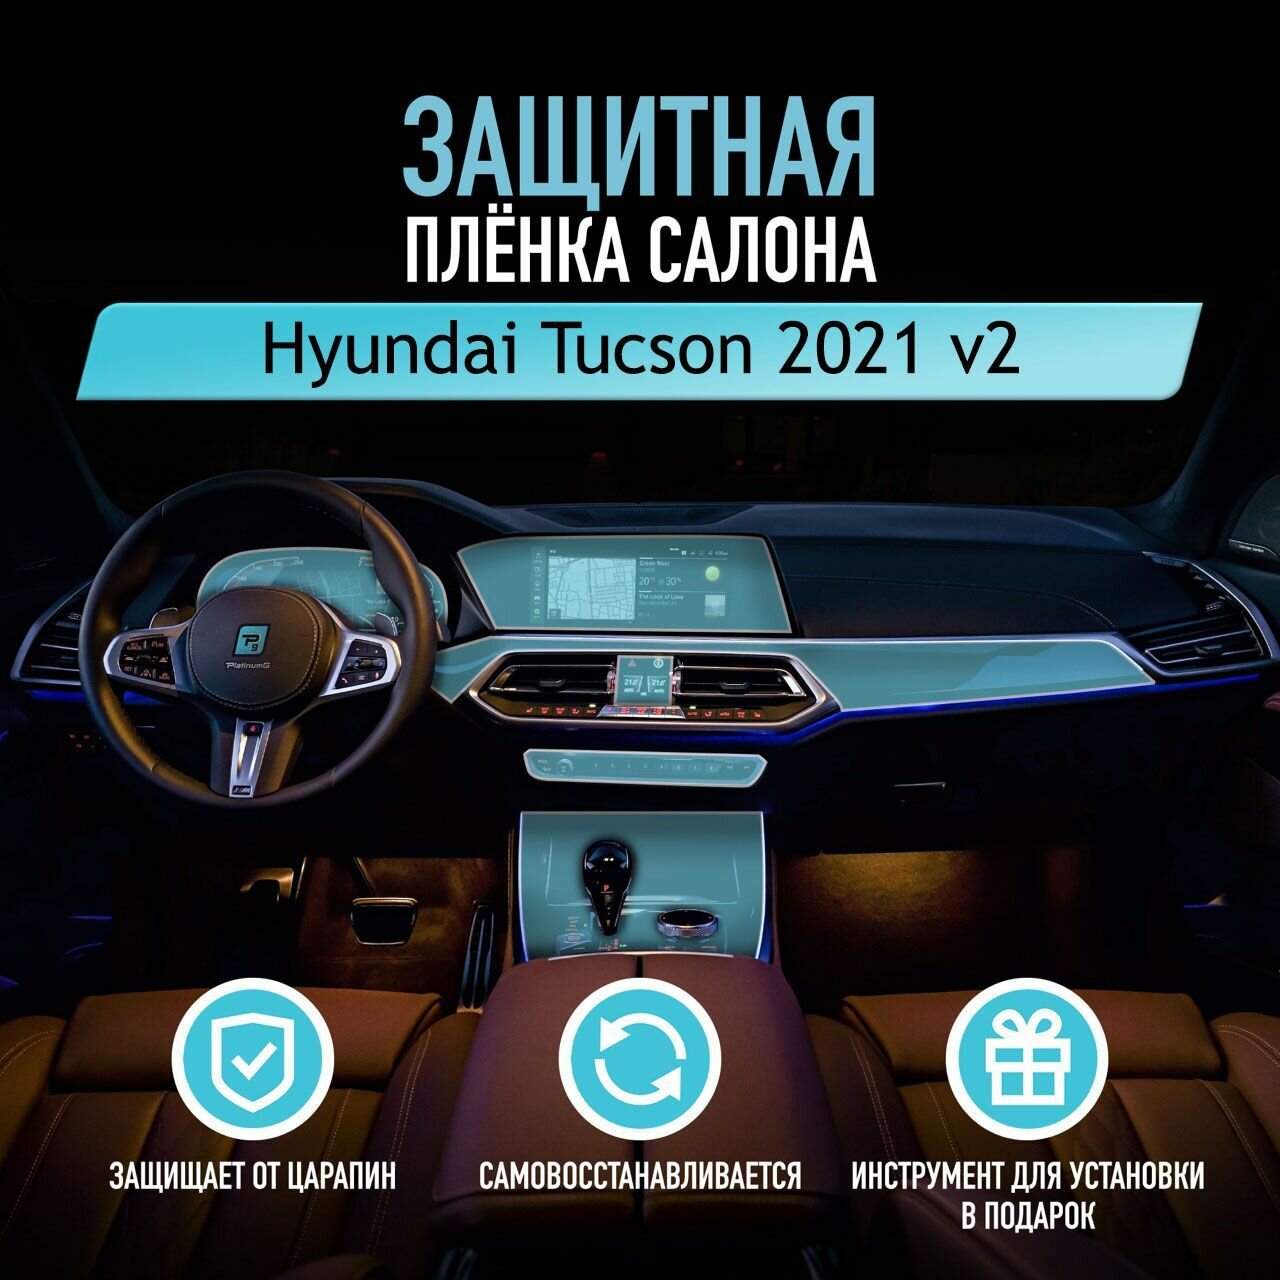 Защитная пленка для автомобиля Hyundai Tucson 2021 v2 Хендай, полиуретановая антигравийная пленка для салона, глянцевая